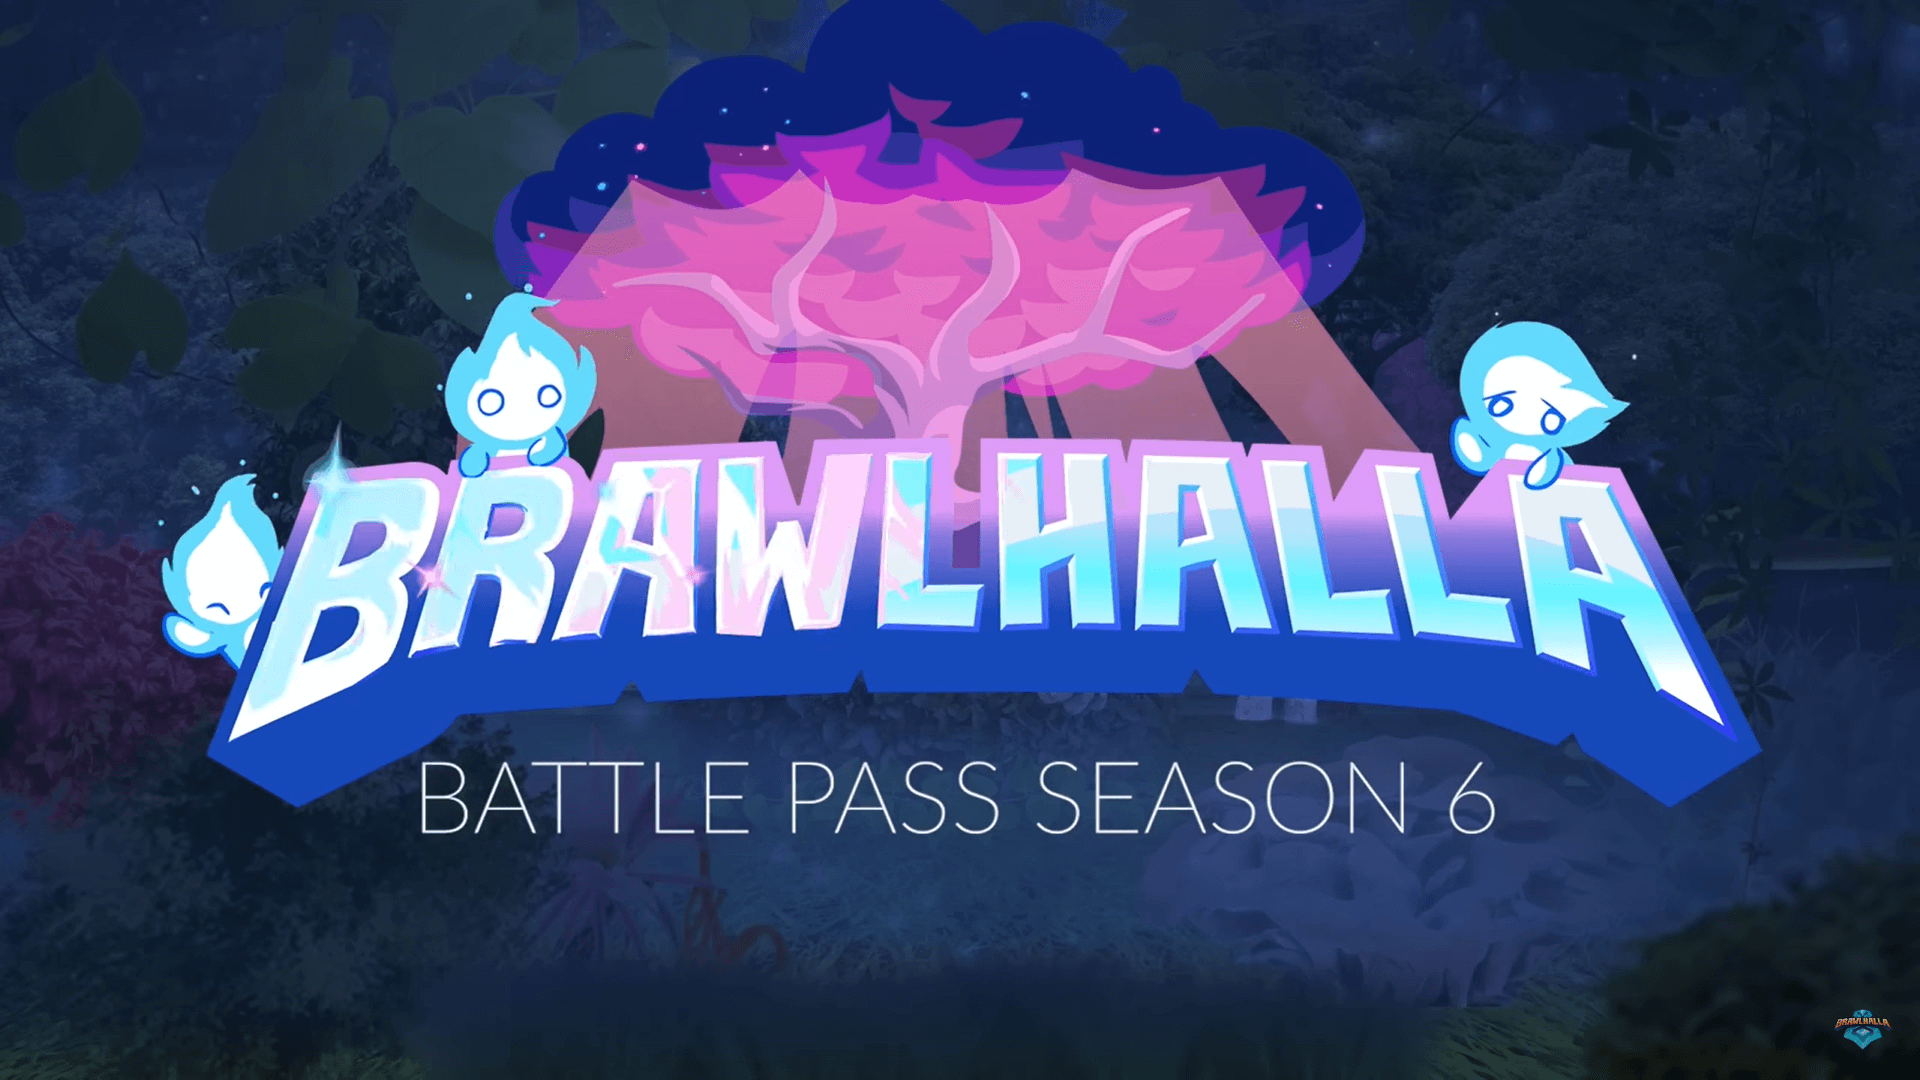 Brawlhalla Battle Pass — We’re Approaching Season 6